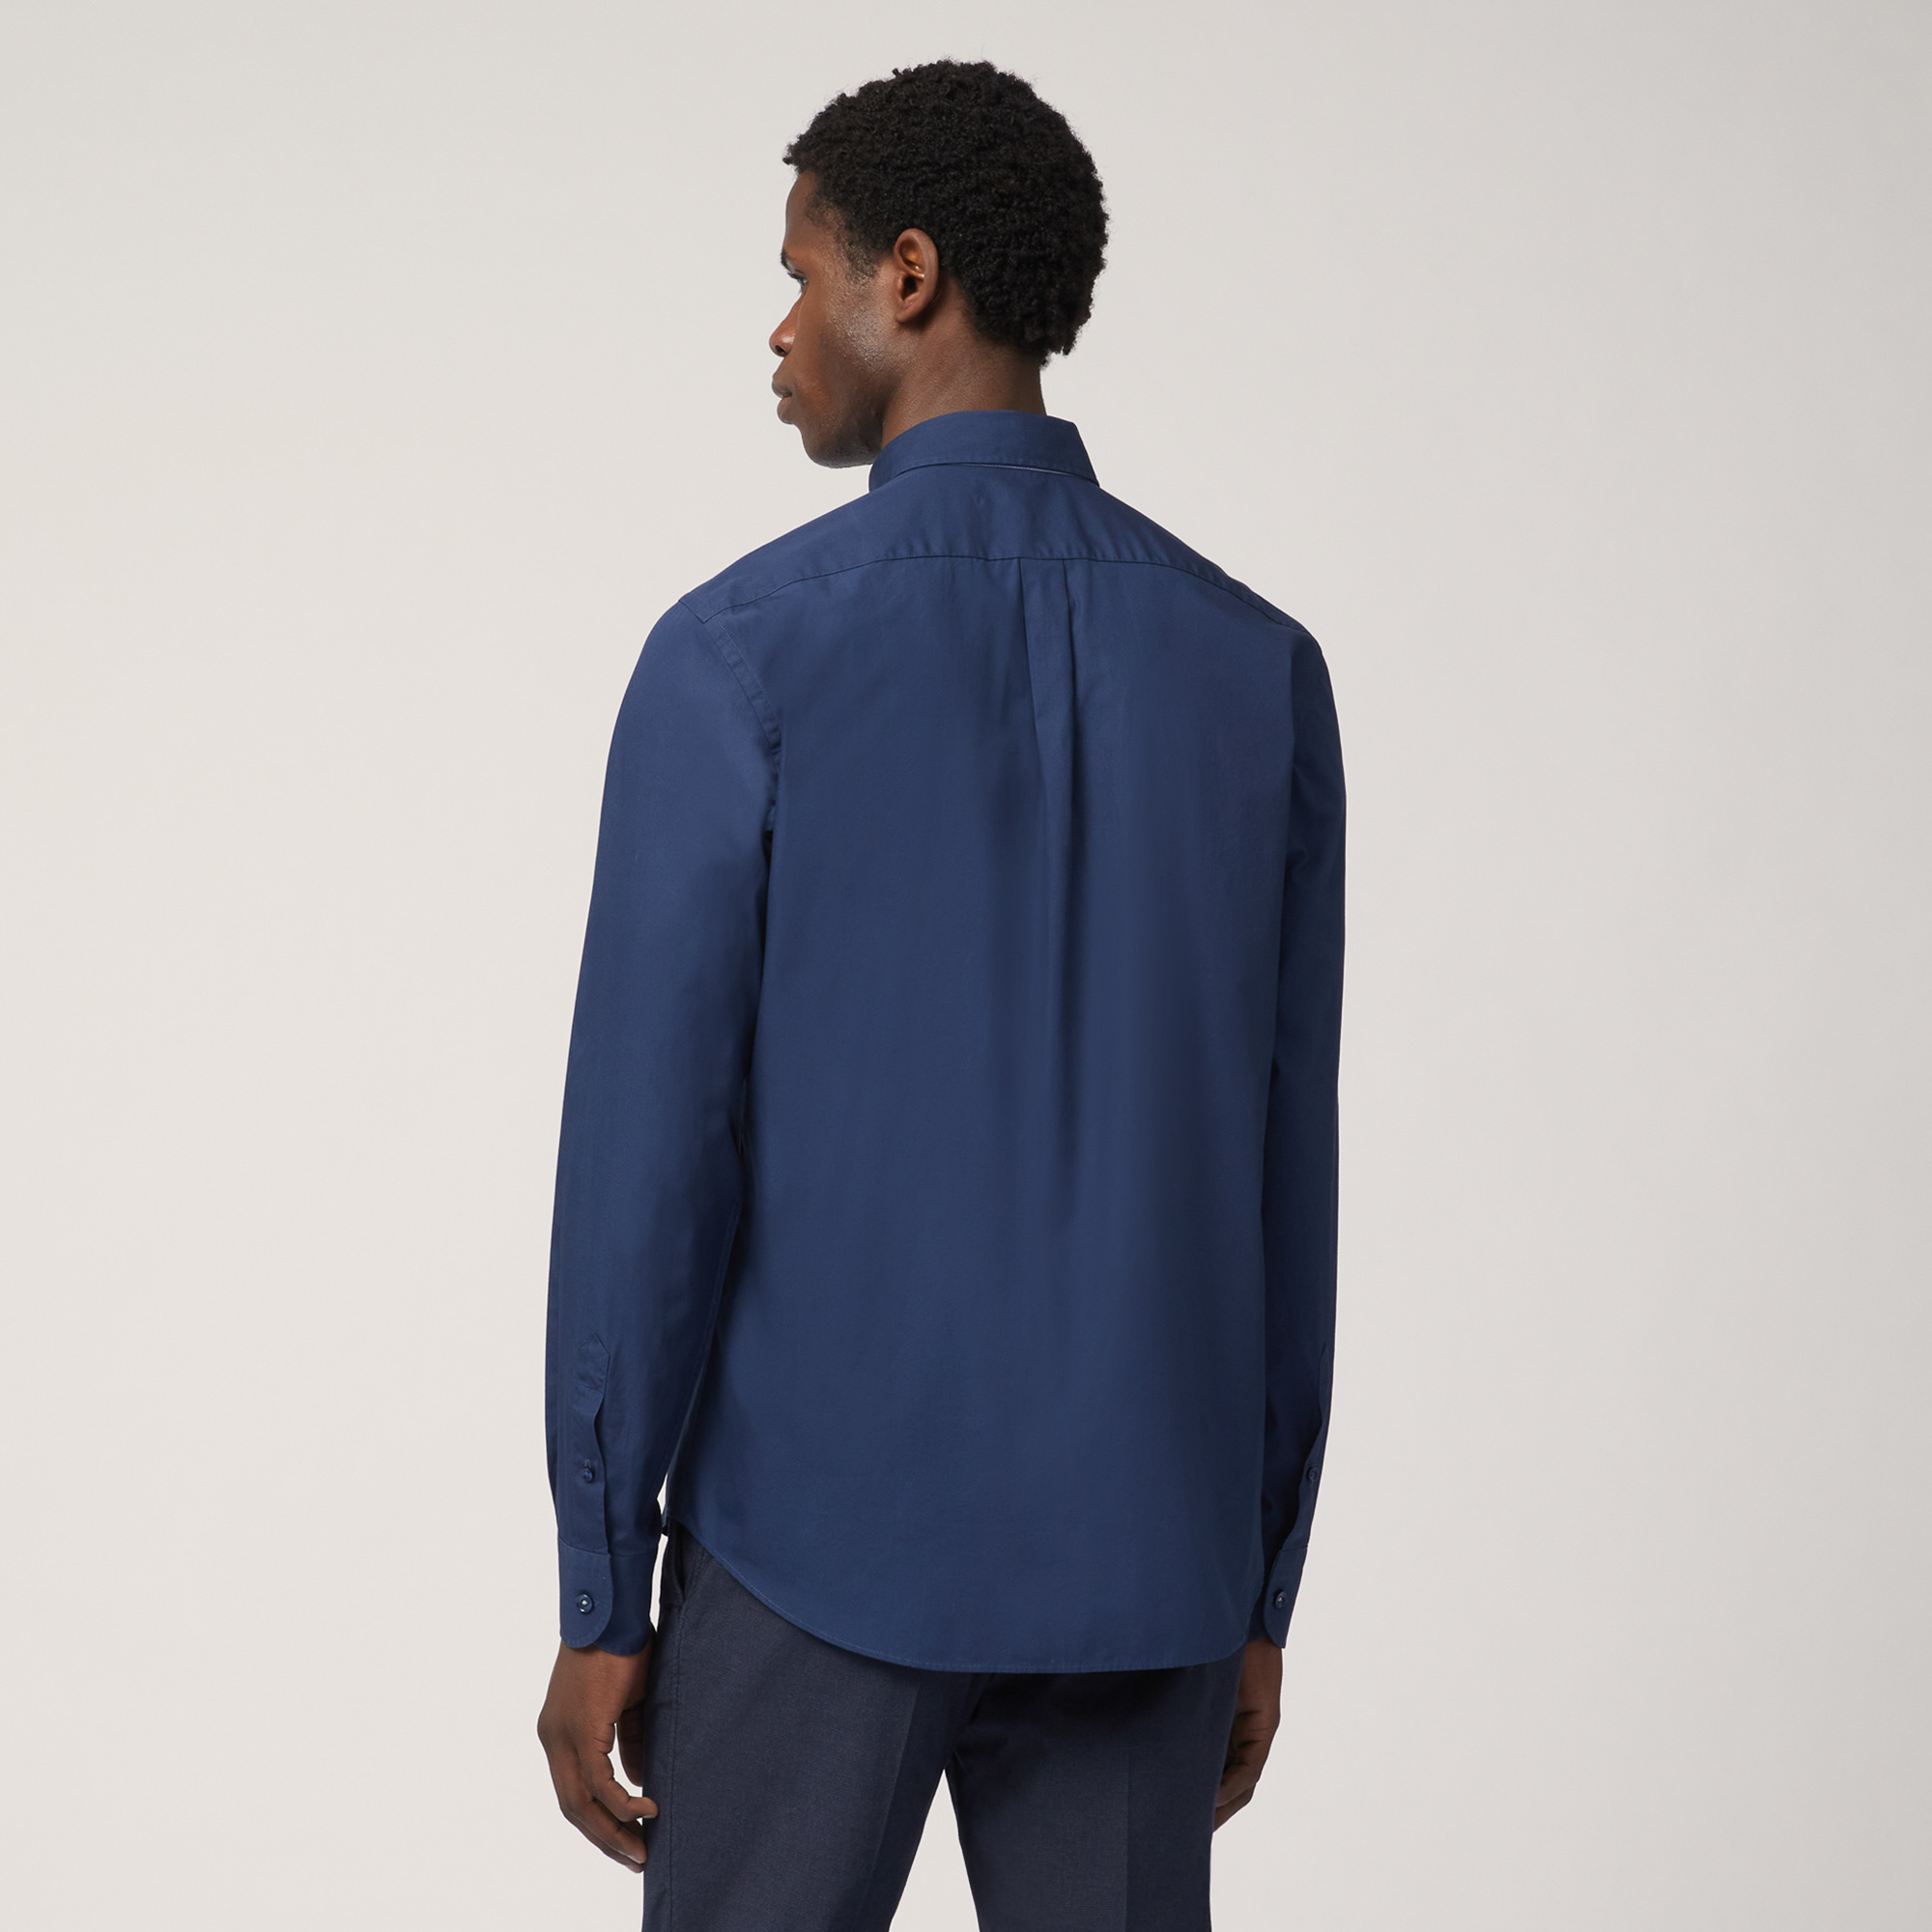 Camicia In Cotone Con Inserti A Contrasto, Light Blue, large image number 1